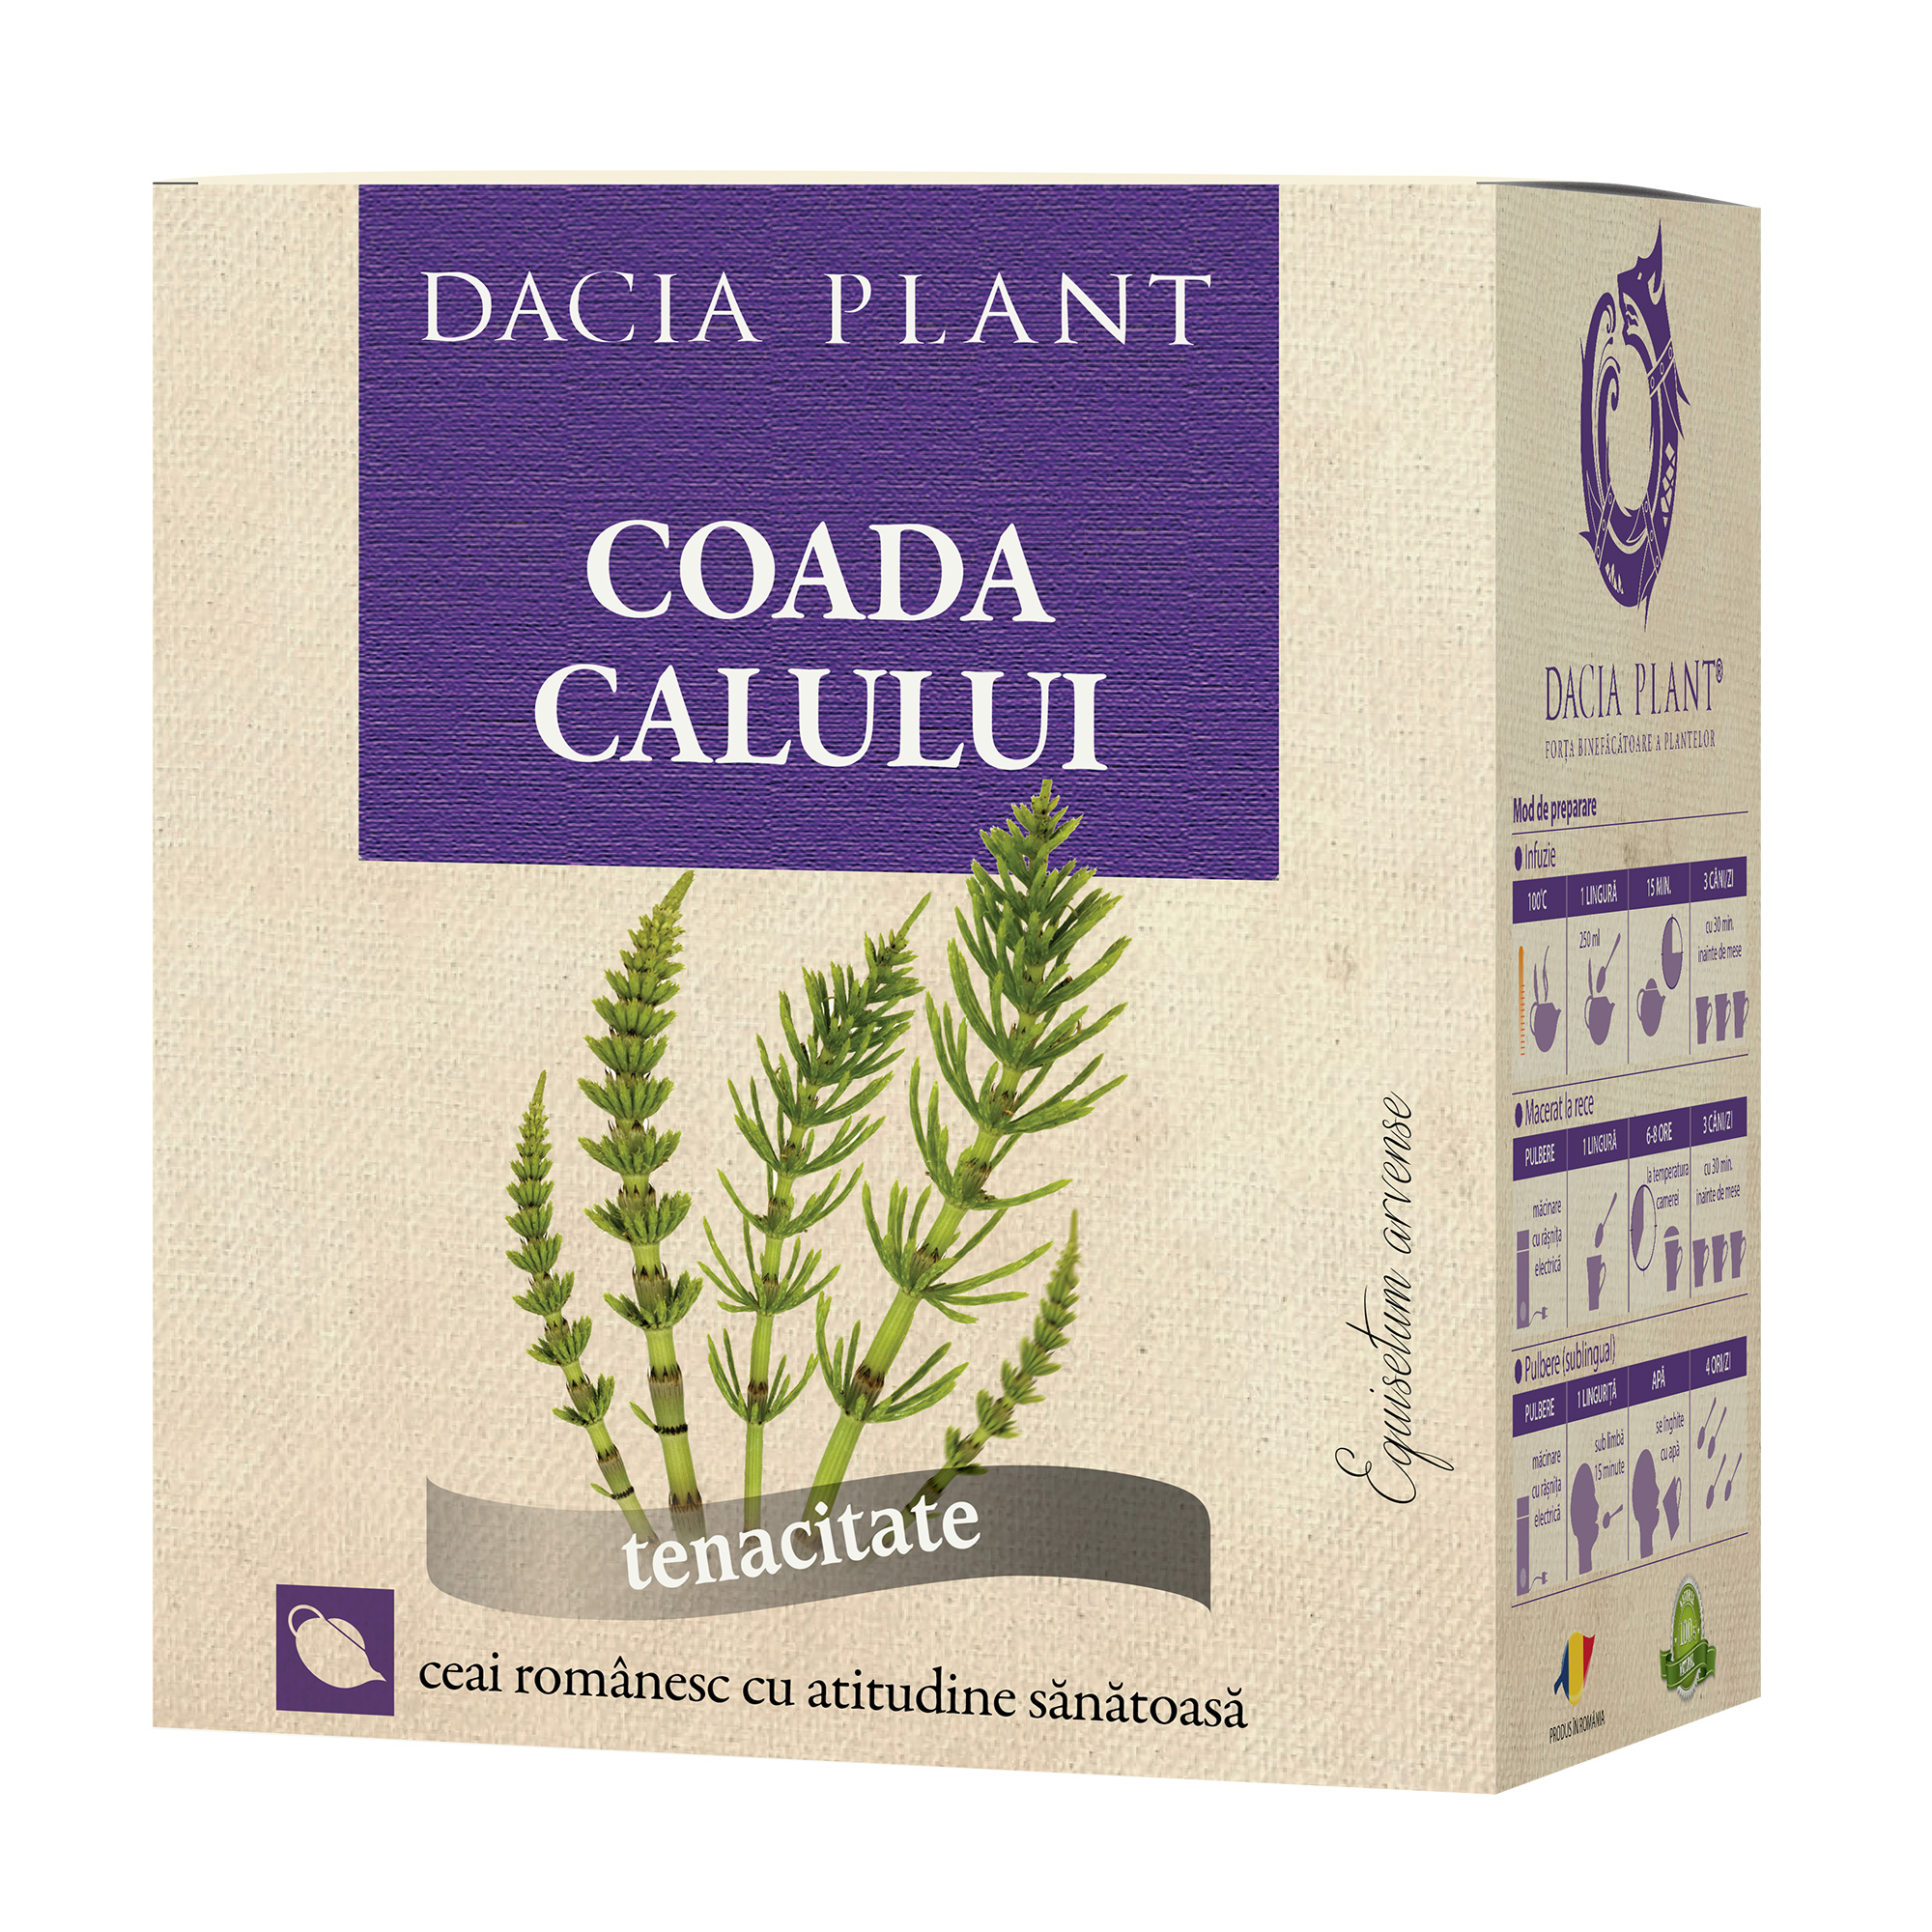 Ceai de Coada Calului Dacia Plant